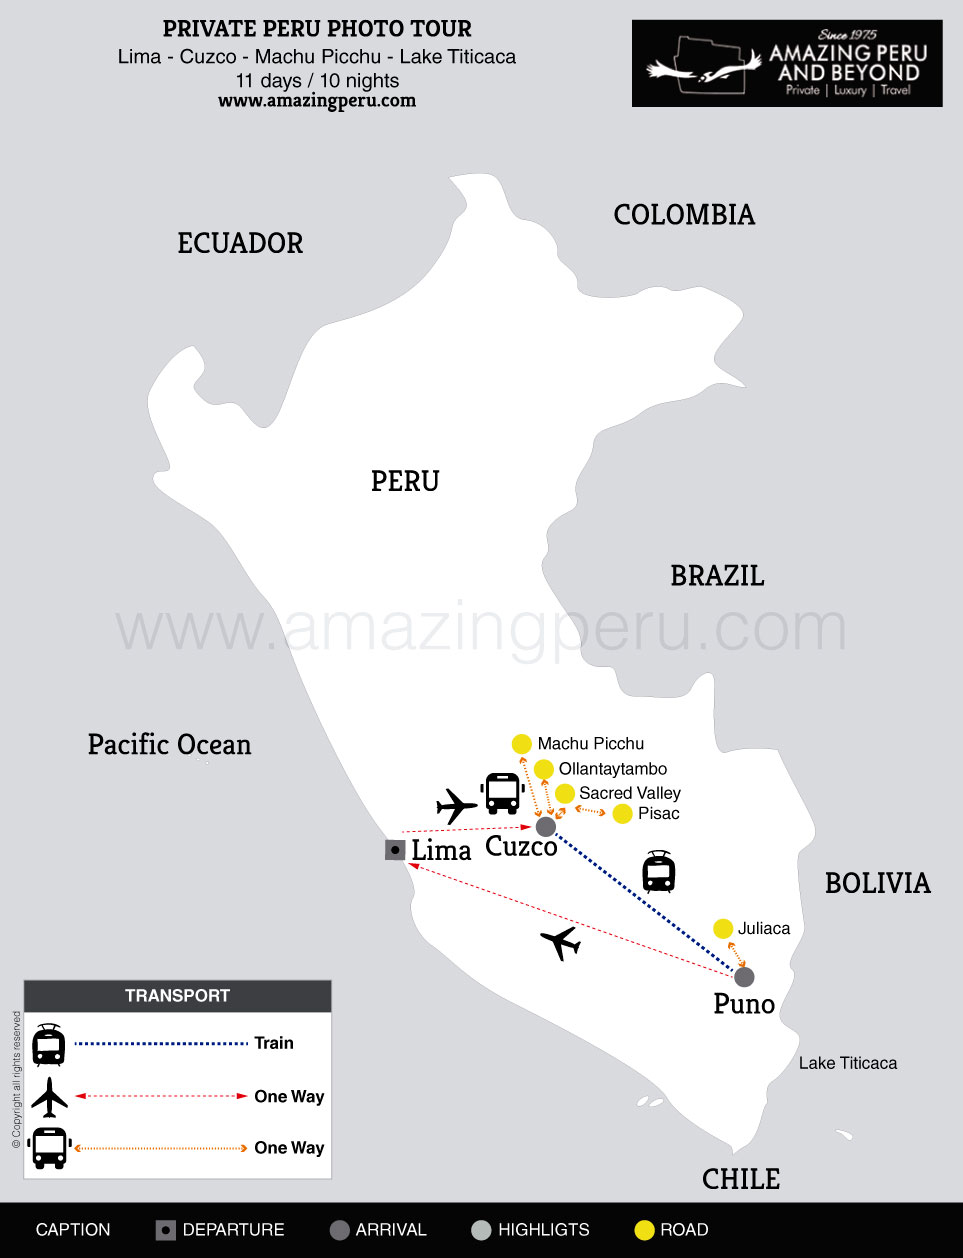 Lima - Cuzco - Machu Picchu - Lake Titicaca